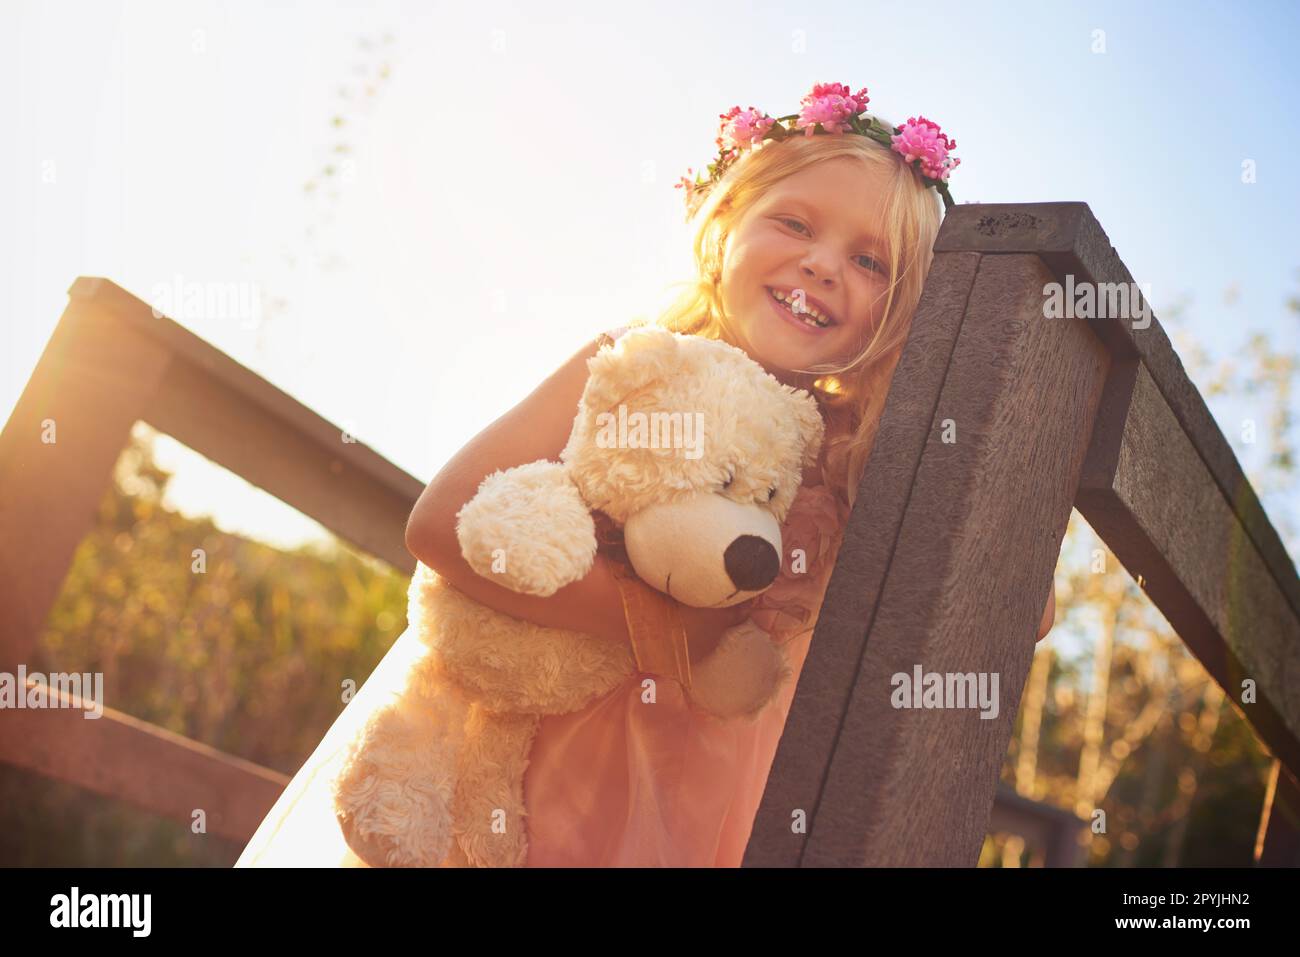 Sie hat einen tollen Tag mit ihrem besten Freund. Ein glückliches kleines Mädchen, das einen Teddybär in der Hand hält und in die Kamera schaut, während es auf einer Brücke steht. Stockfoto